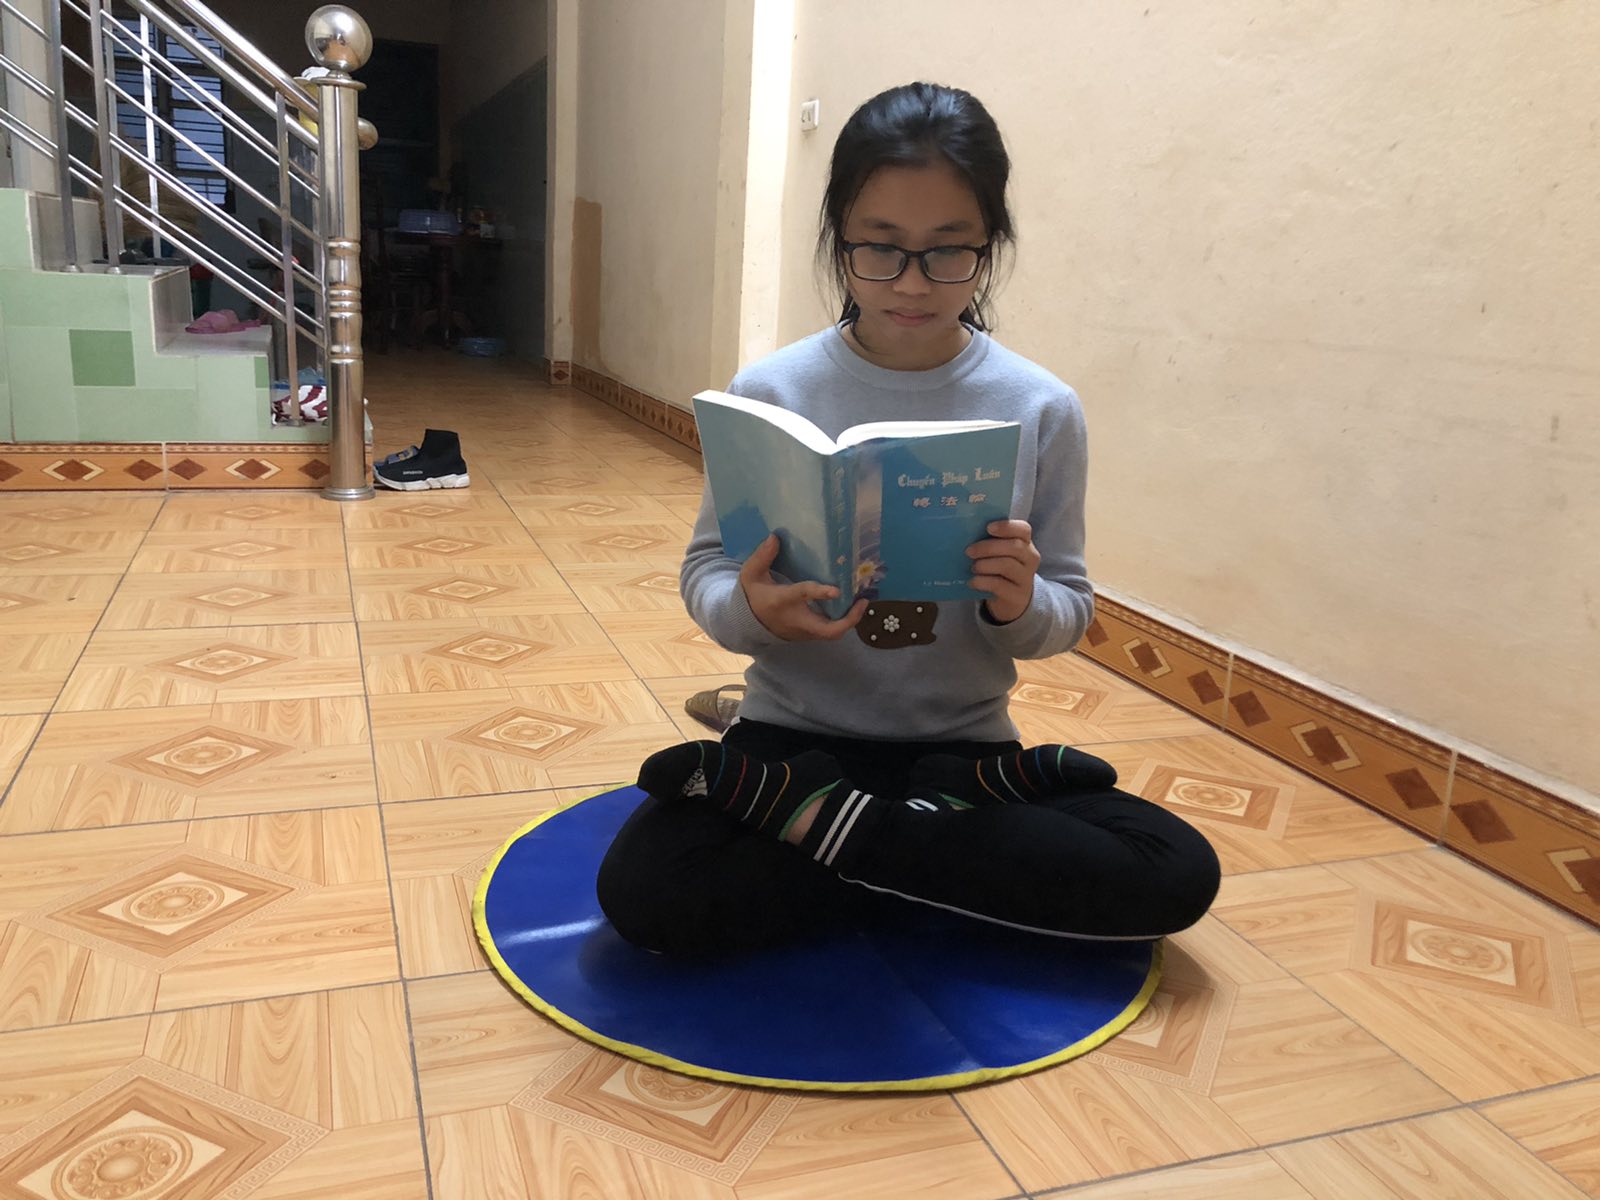 Quỳnh Hương đang đọc cuốn sách Chuyển Pháp Luân.